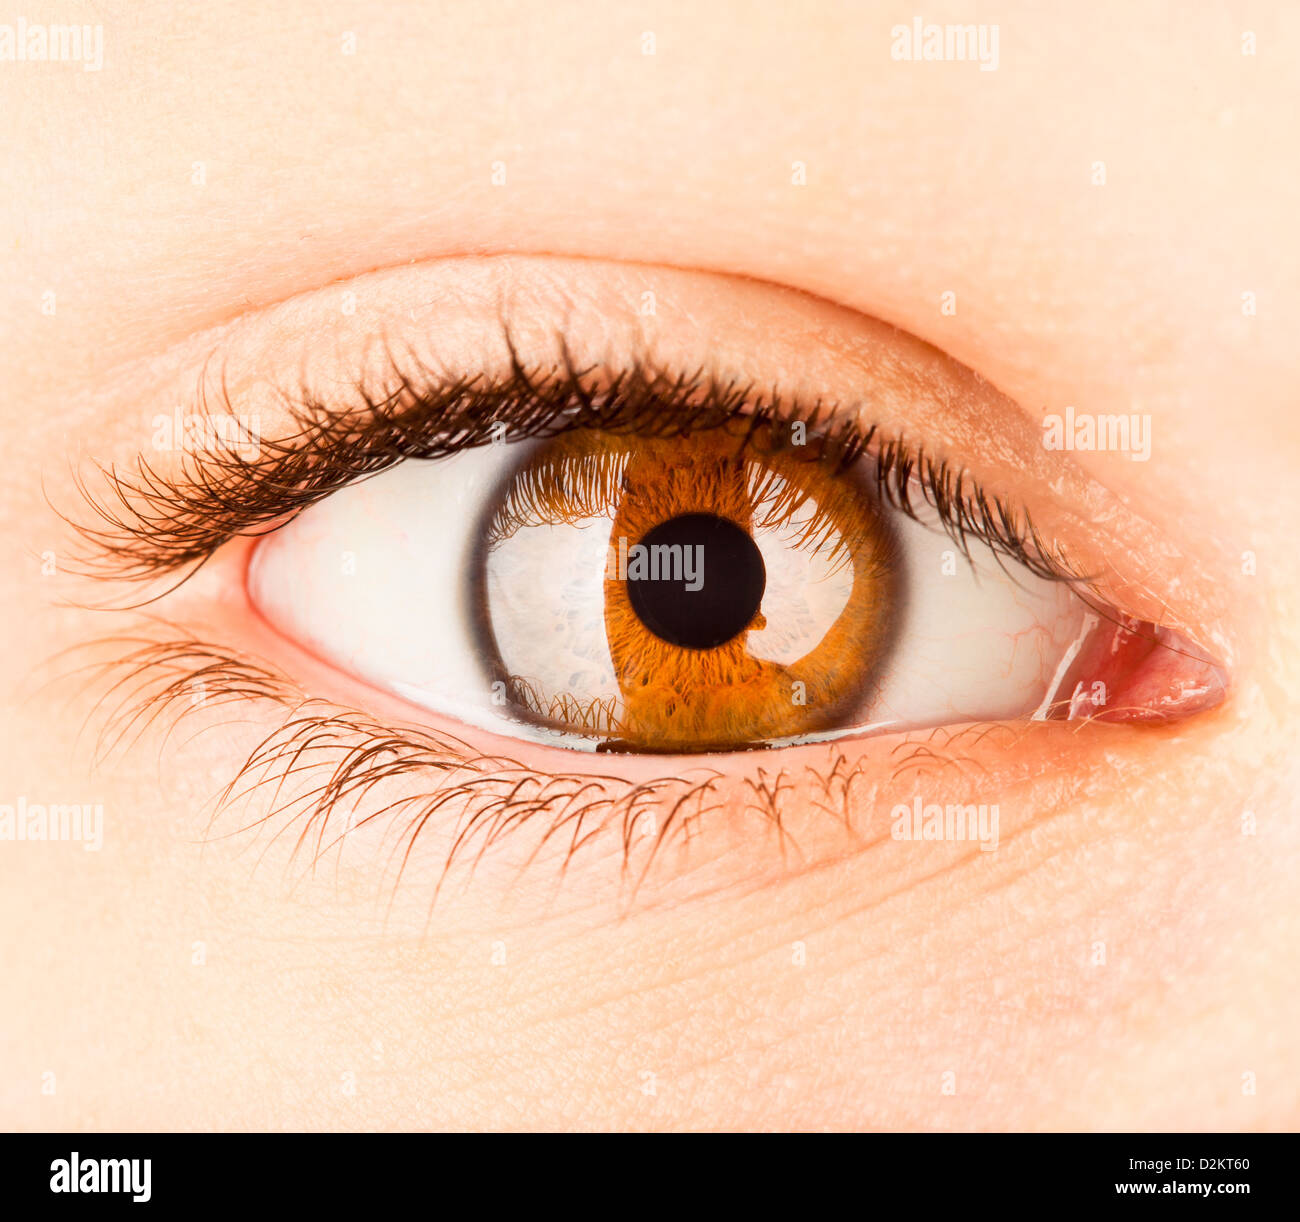 L'œil de la personne, un élève photographié close up Banque D'Images